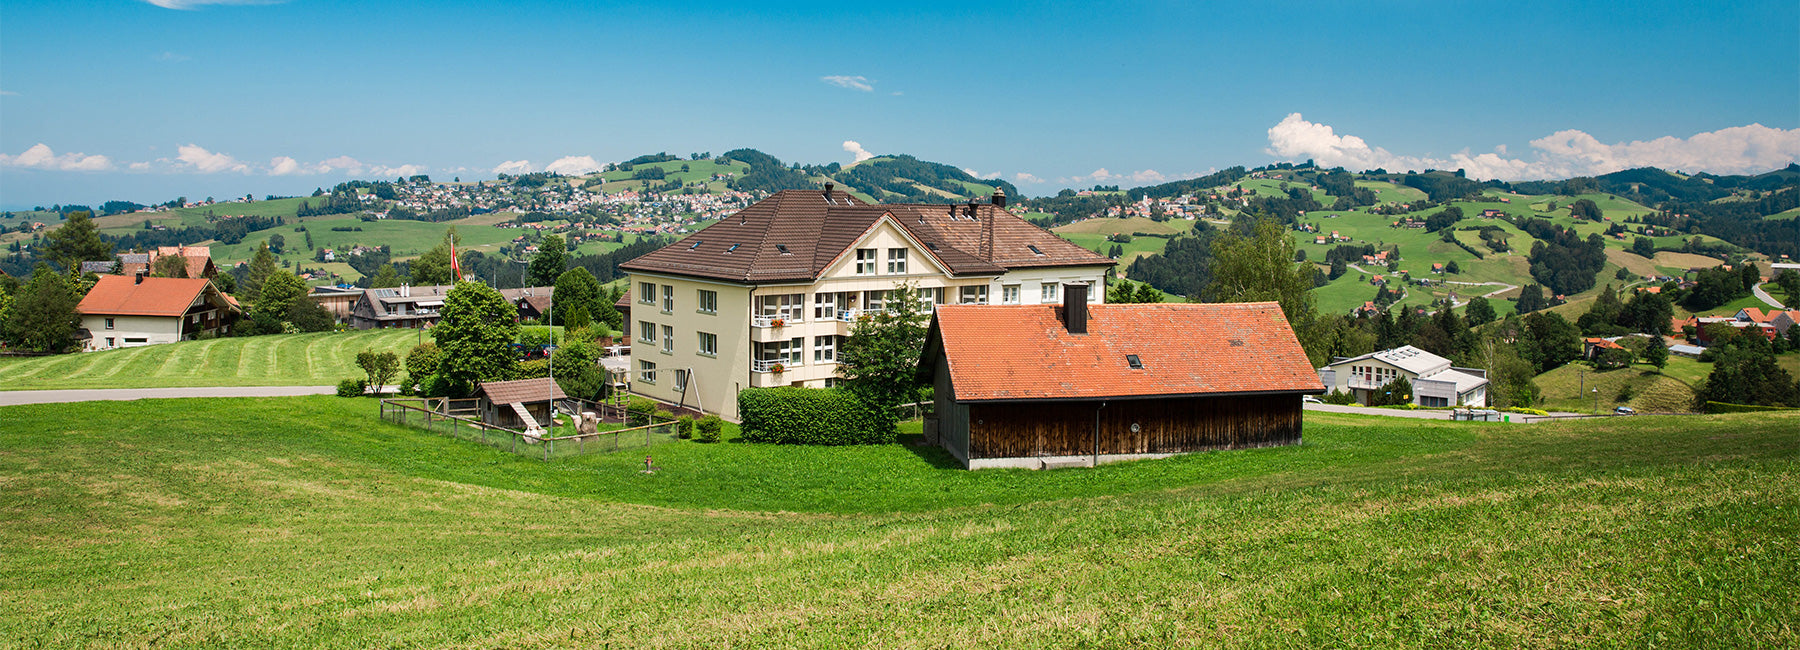 Wohn- und Pflegeheim Boden Trogen Appenzell Ausserrhoden